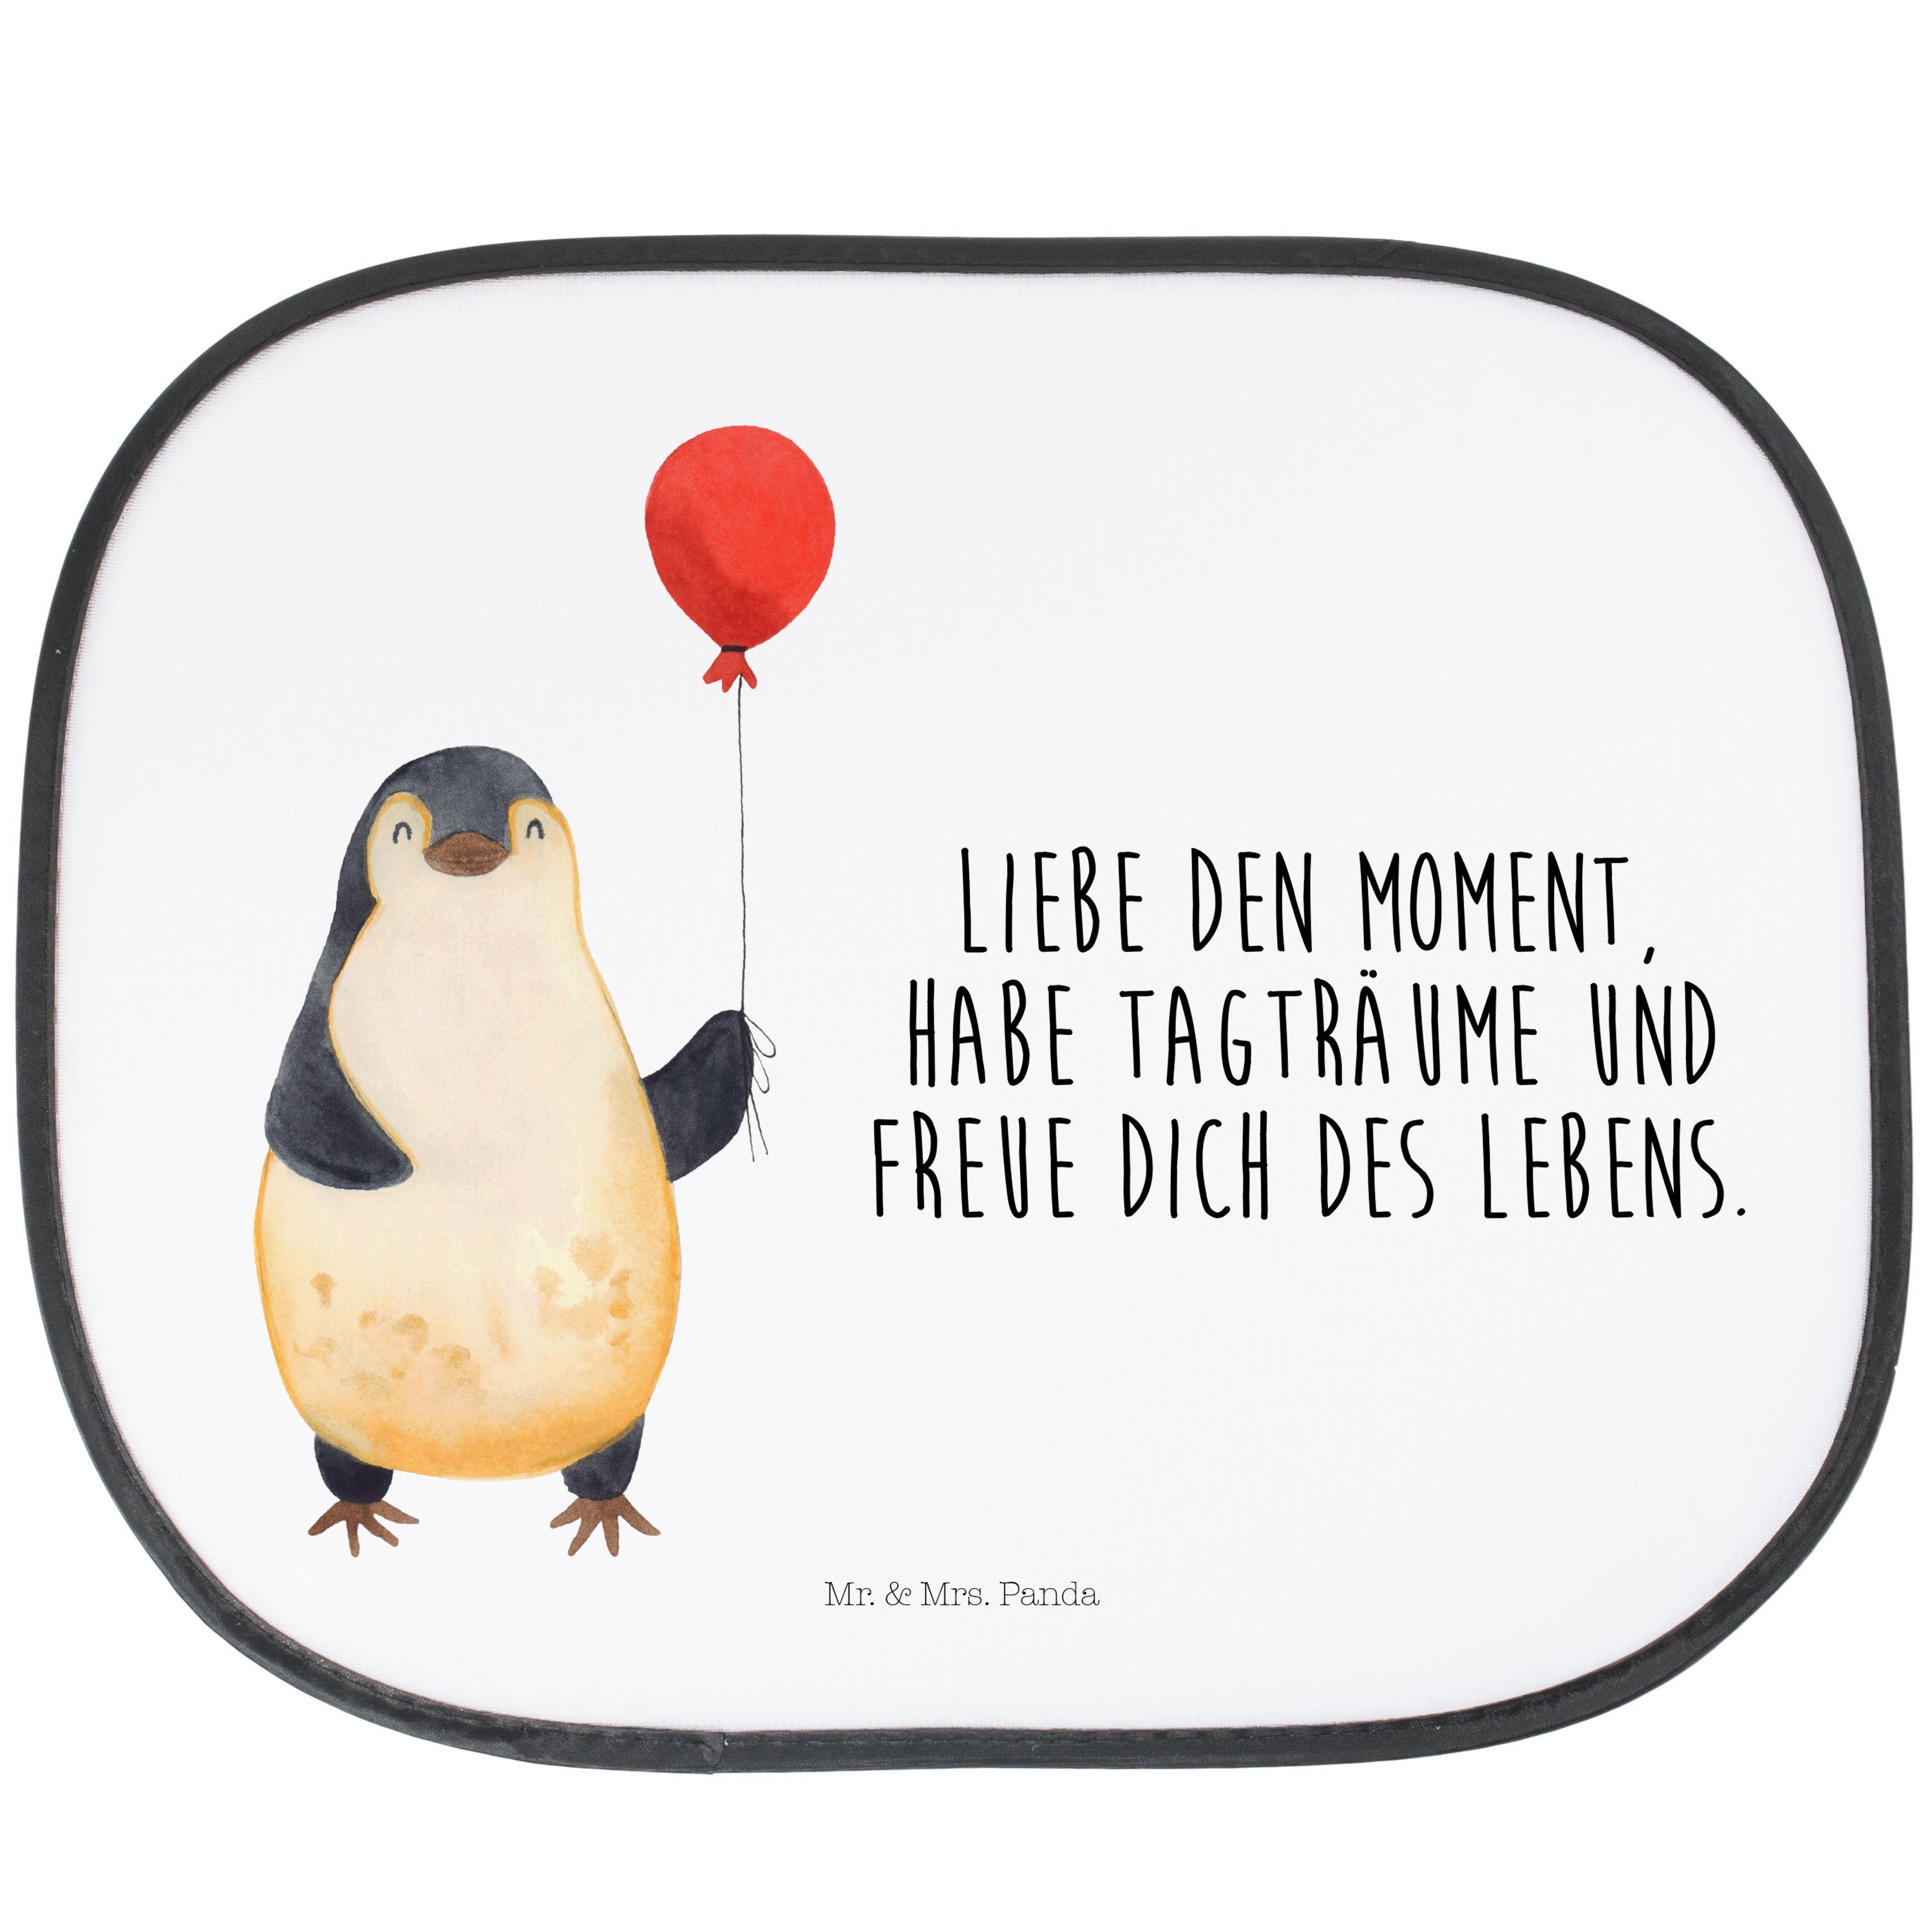 Sonnenschutz Pinguin Luftballon - Weiß - Geschenk, Sonnenschutz Baby, Auto Sonnens, Mr. & Mrs. Panda, Seidenmatt